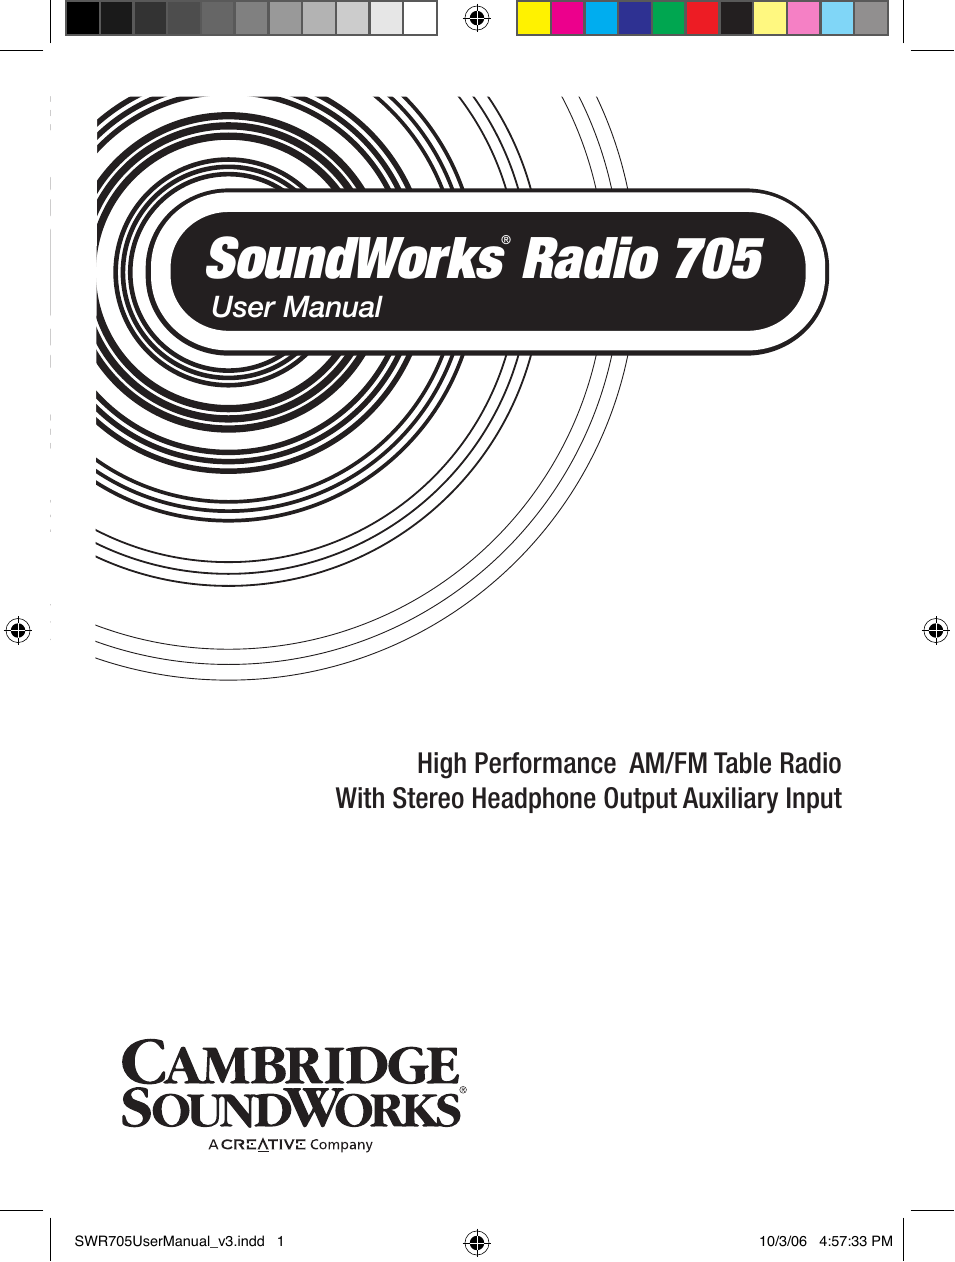 SoundWorks 705